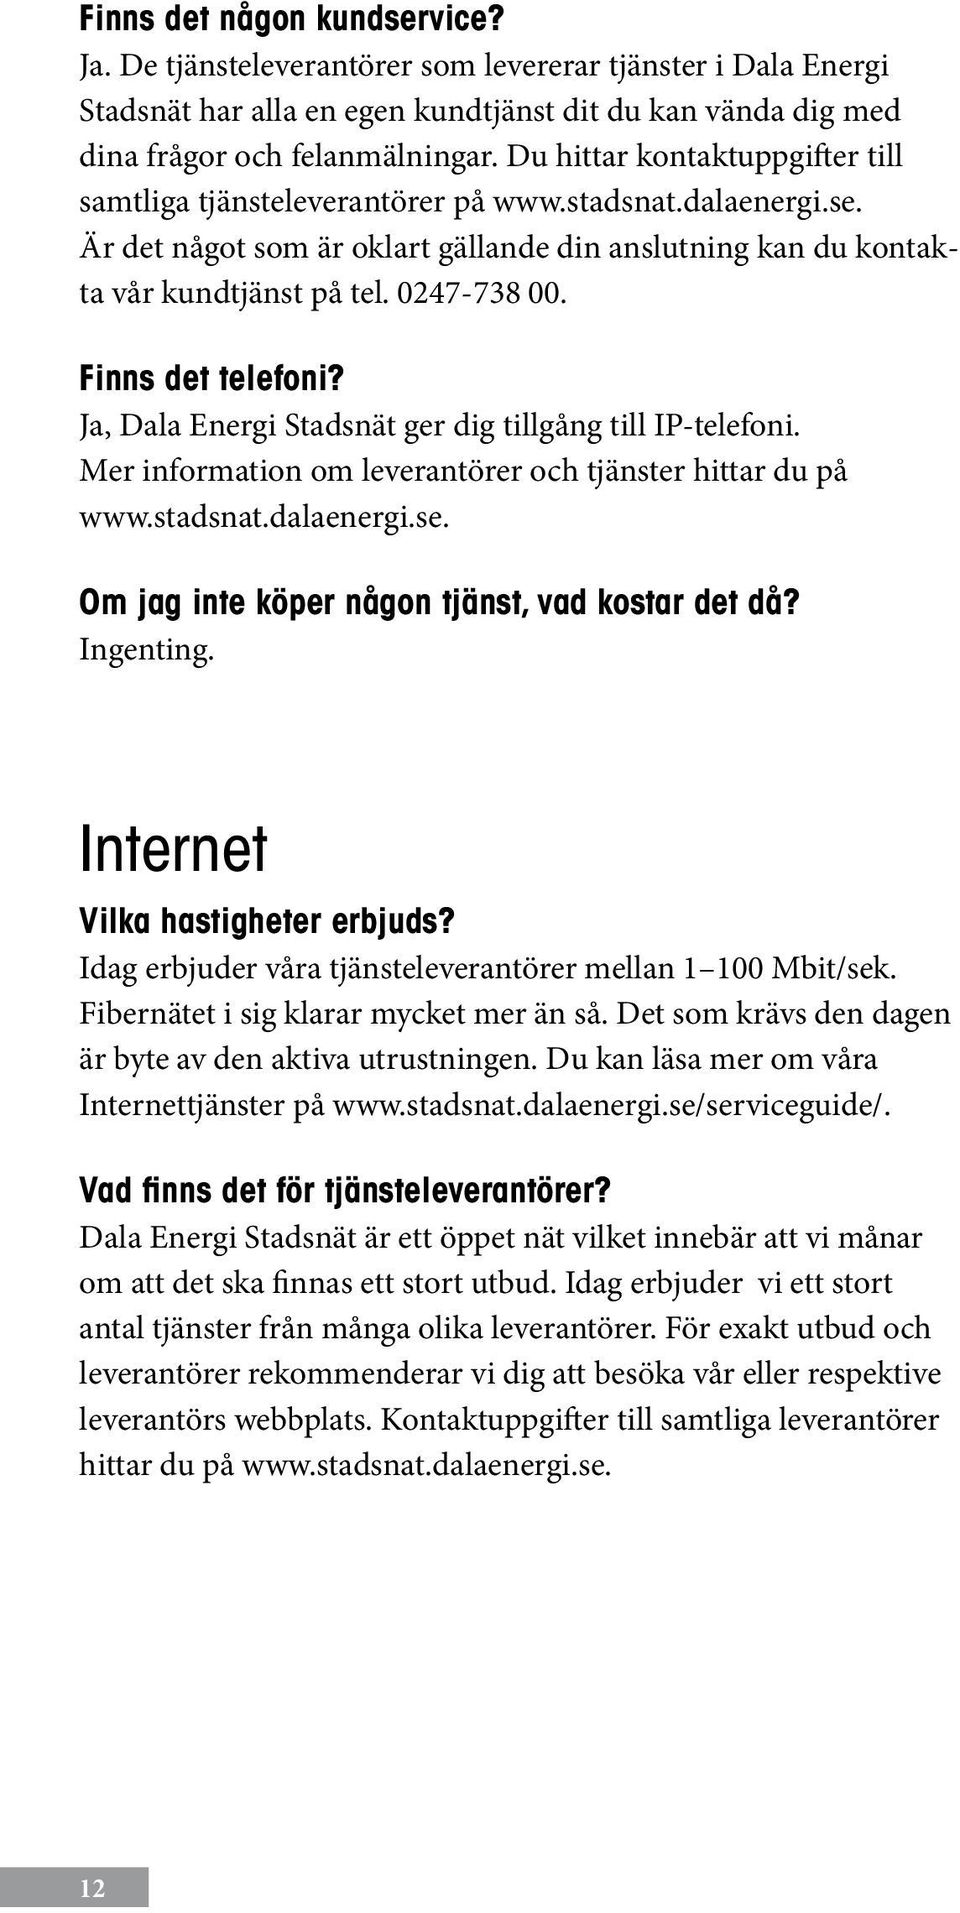 Finns det telefoni? Ja, Dala Energi Stadsnät ger dig tillgång till IP-telefoni. Mer information om leverantörer och tjänster hittar du på www.stadsnat.dalaenergi.se.